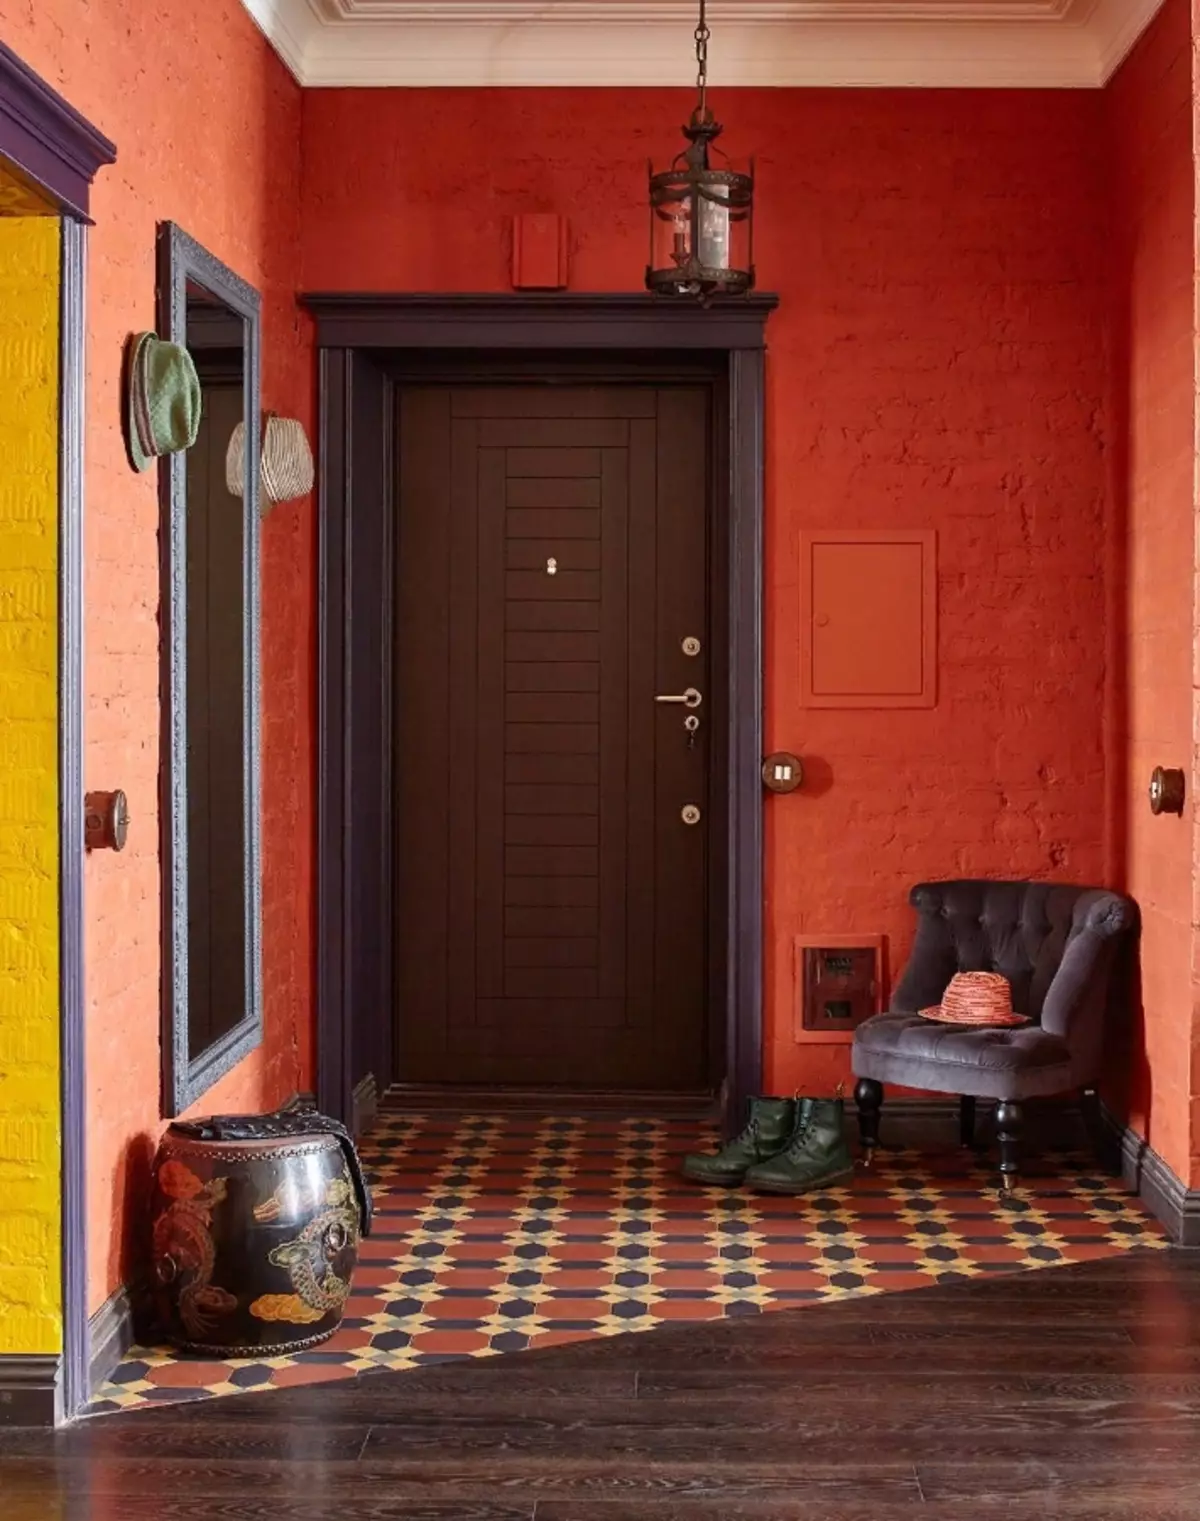 Hall de entrada em estilo loft (76 fotos): cabide e móveis no interior de um pequeno corredor, um design corredor com uma parede de tijolos, escolher um banco e roupeiros 9088_9